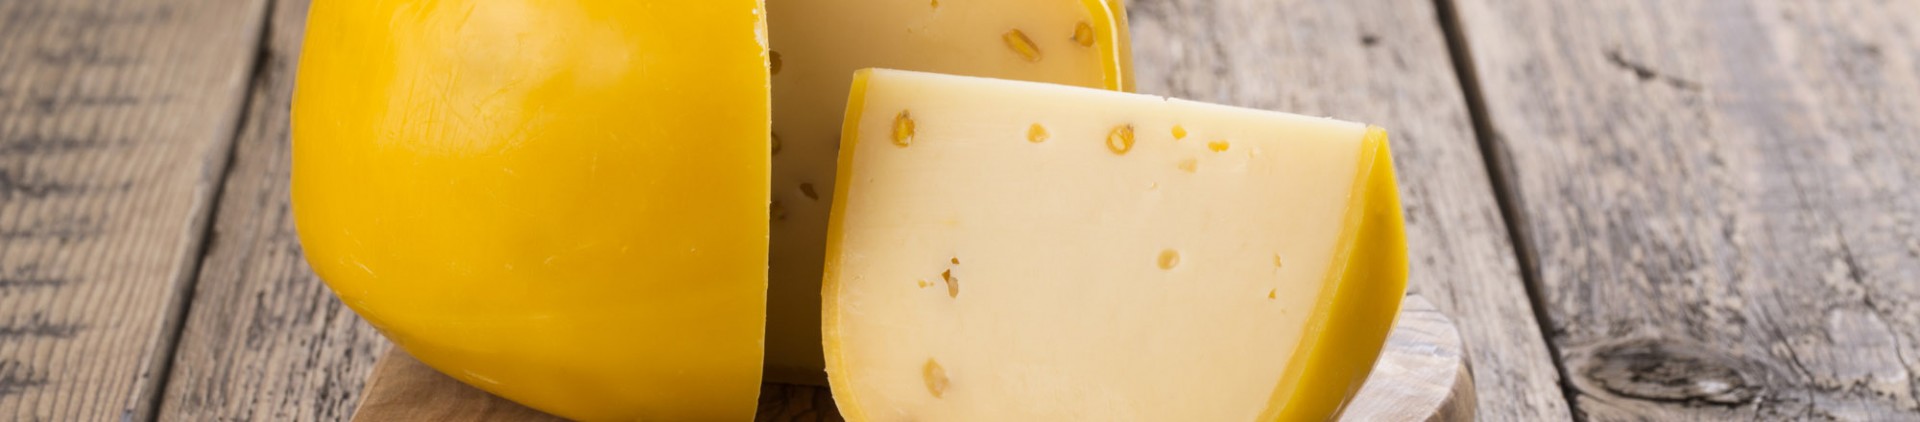 Route du fromage en province de Liège